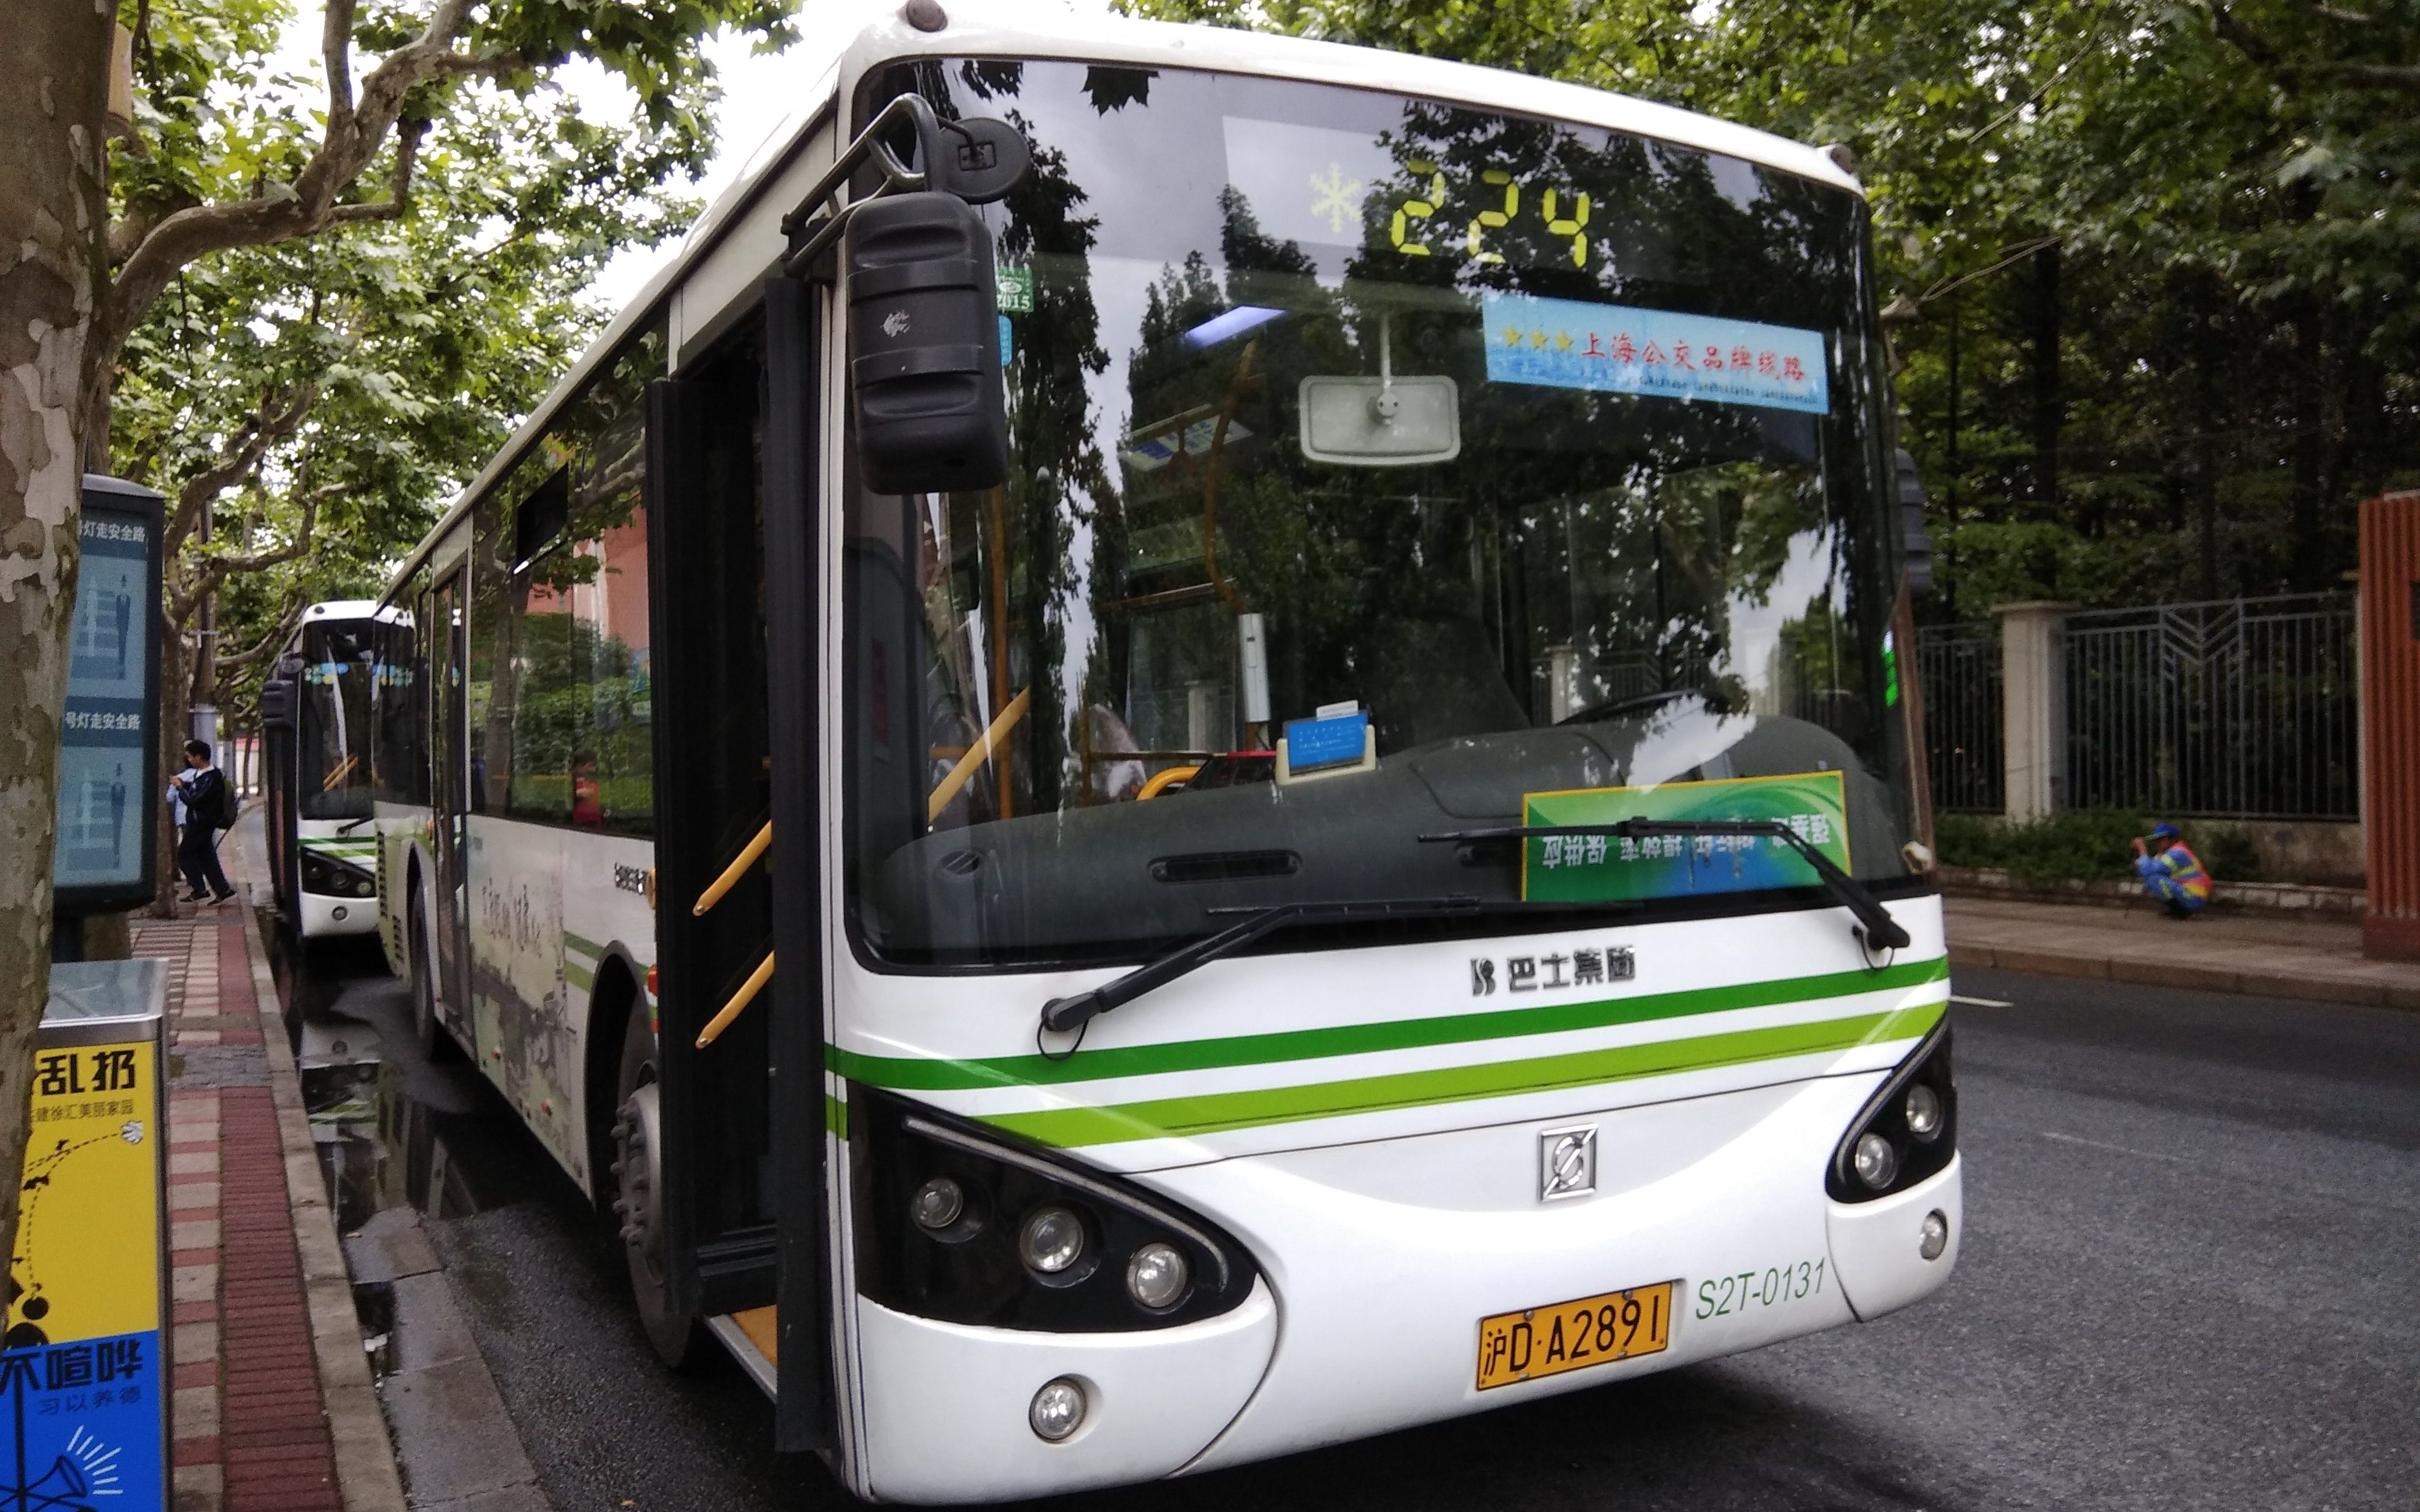 【POV52先行】上海巴士三公司01线公交车 上海西站-蓝村路南泉路 第一视角视频 _网络排行榜